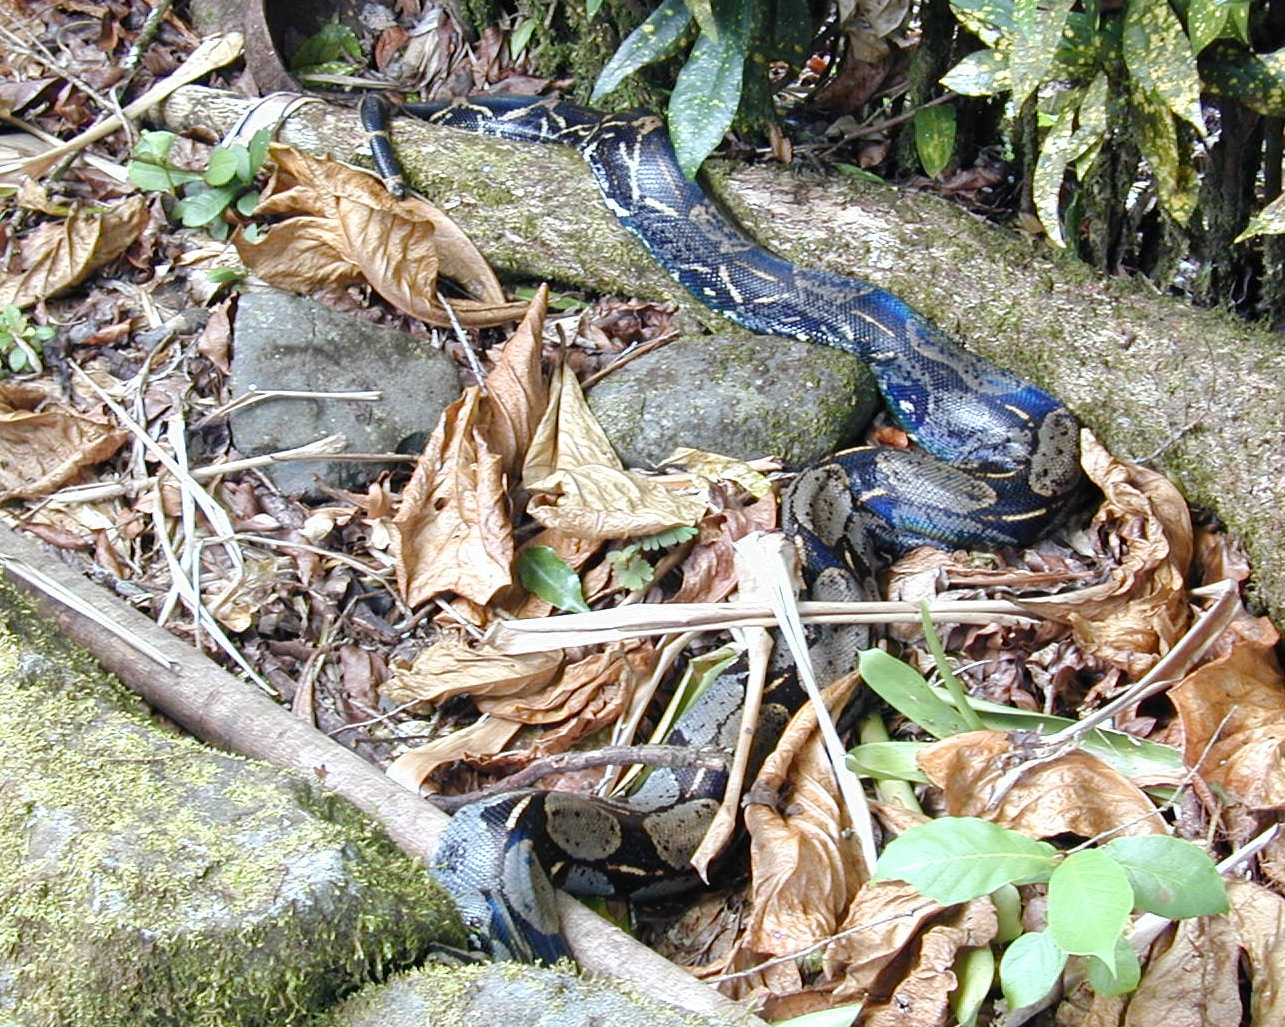 A wild boa constrictor at Isla Gorgona